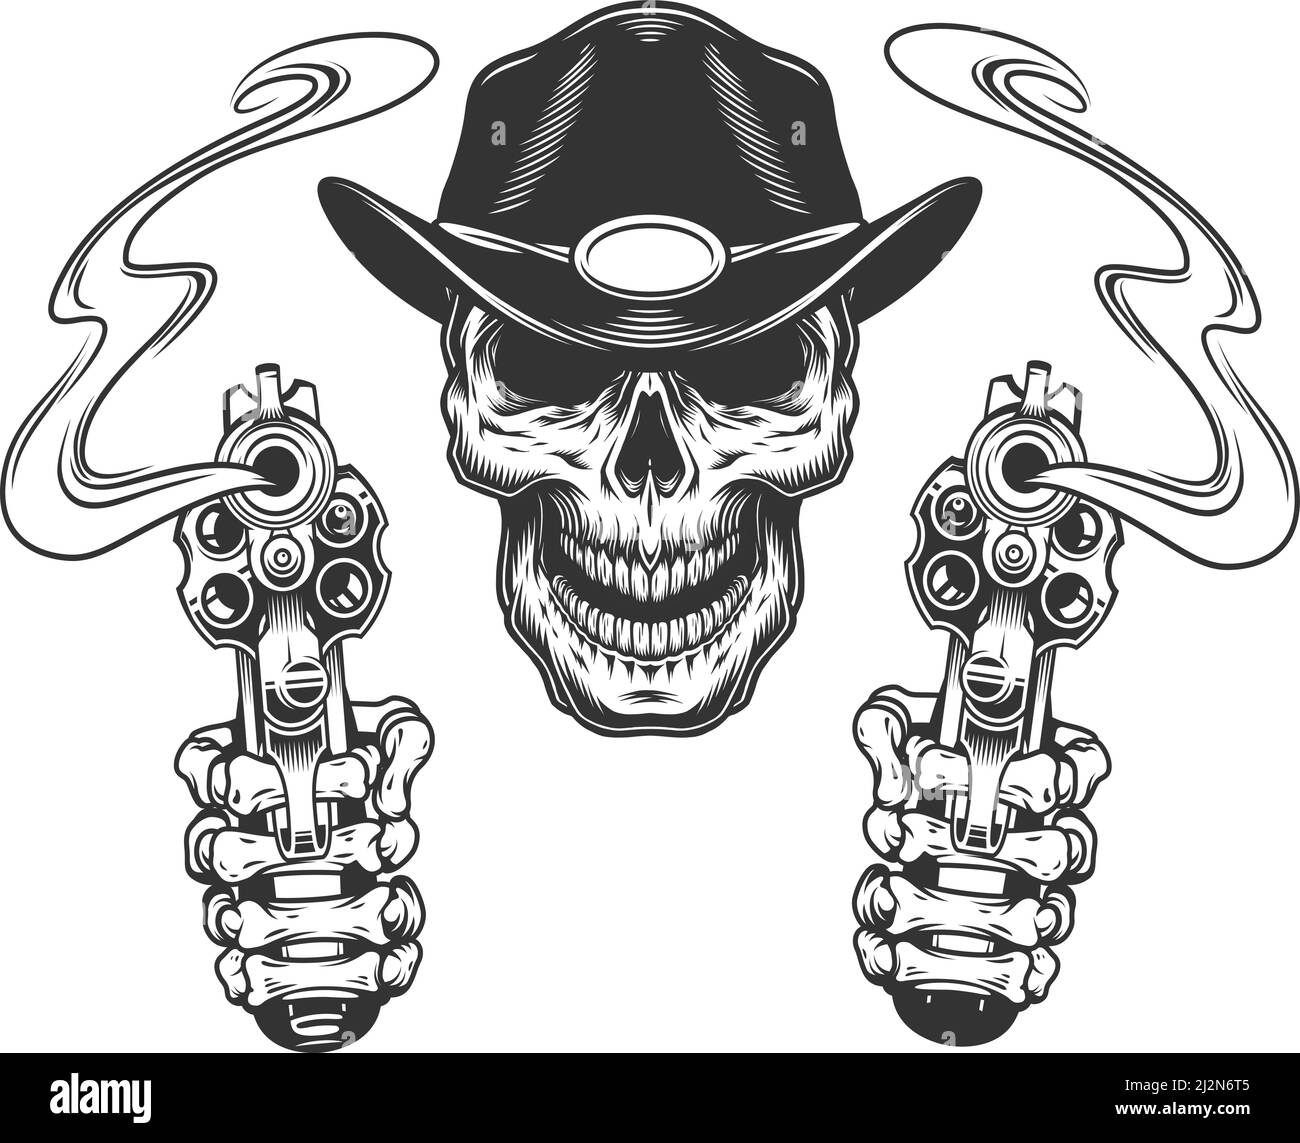 Crâne de shérif monochrome vintage avec mains de squelette tenant les revolvers isolés illustration vectorielle Illustration de Vecteur